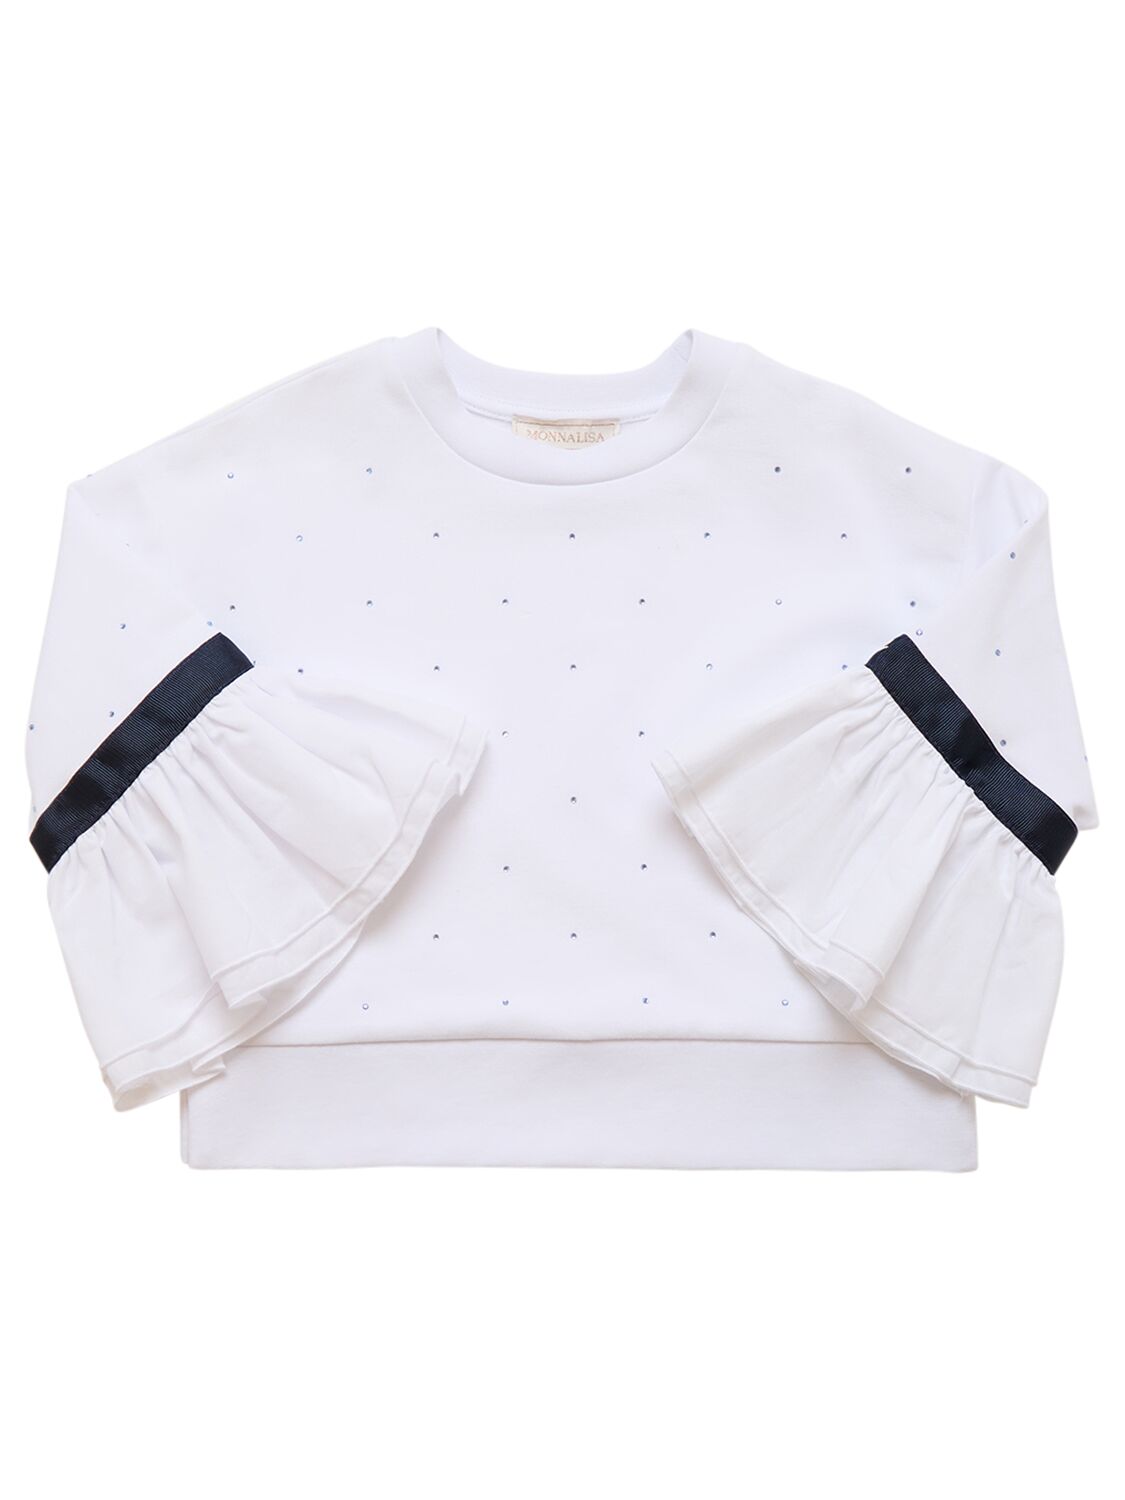 Monnalisa Kids' Cotton Eyelet Lace Crewneck Sweatshirt In White